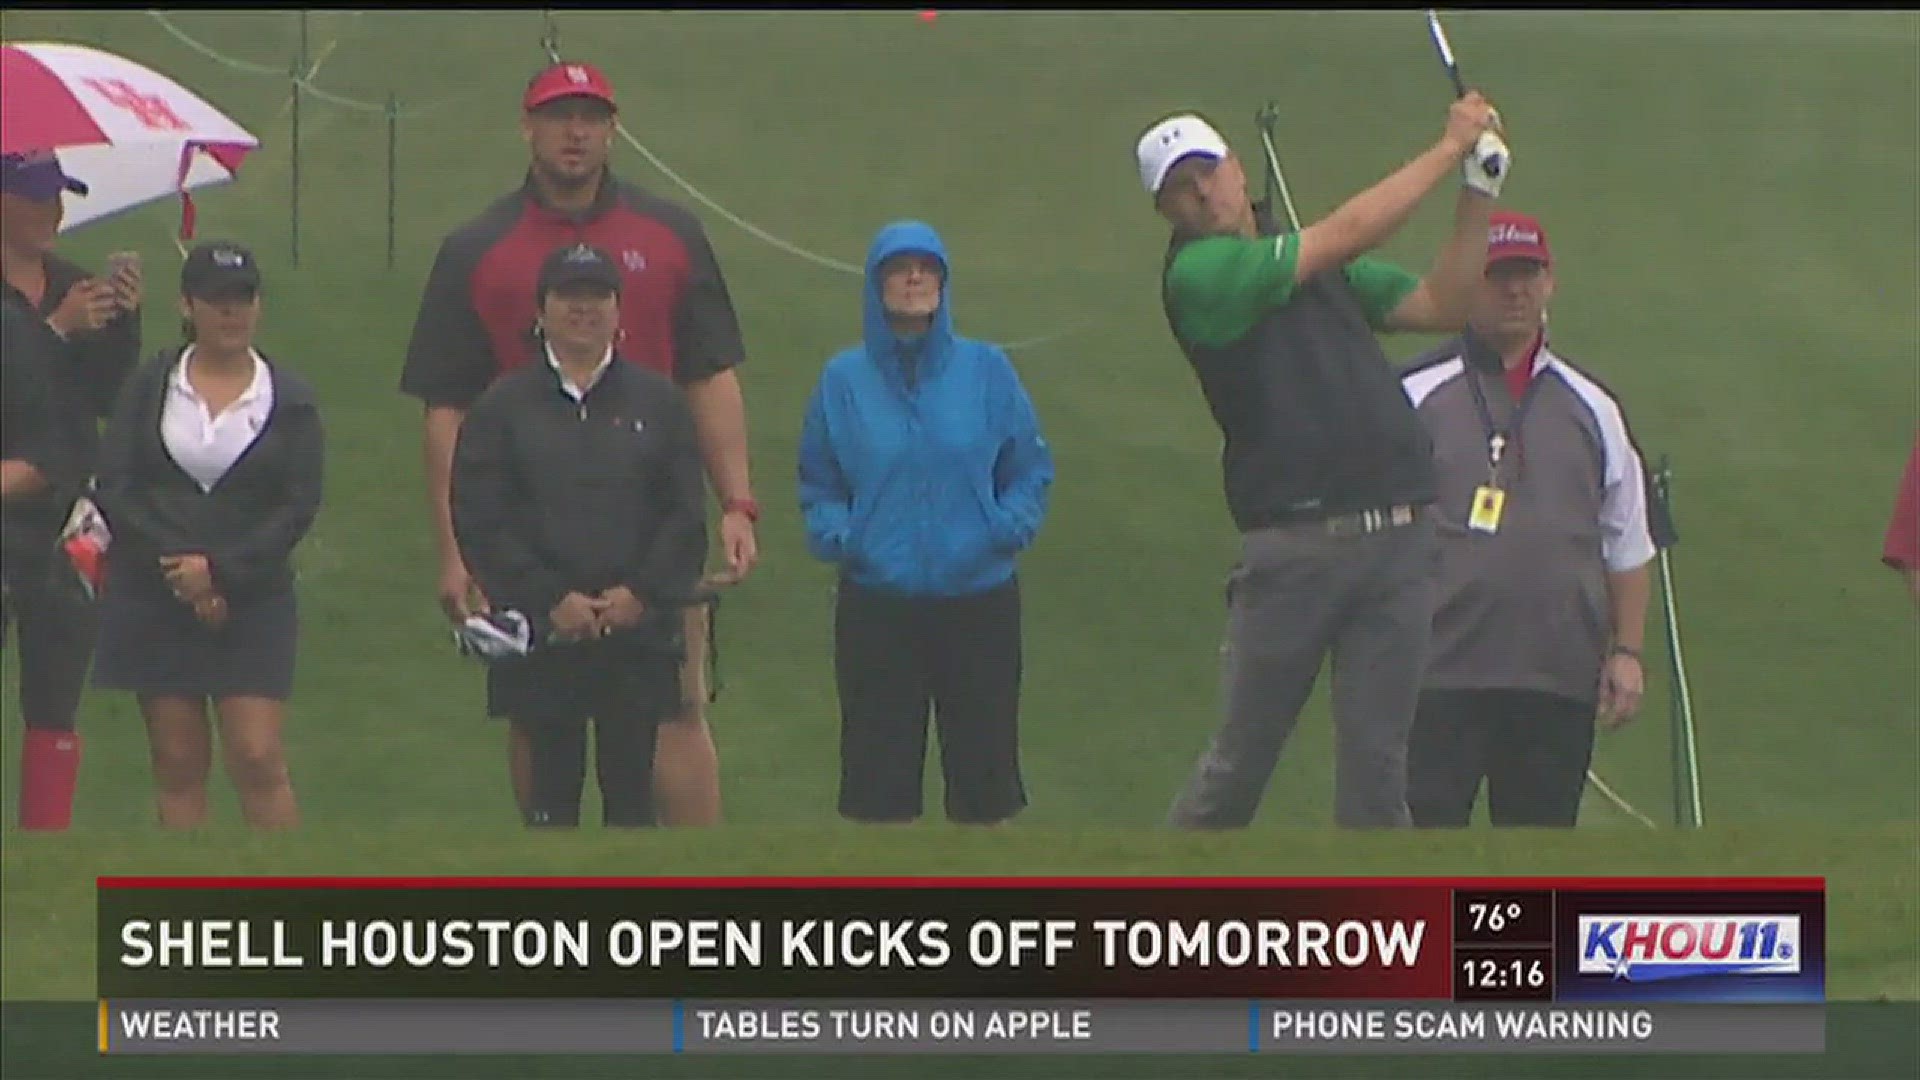 The Shell Houston Open, Houston's annual PGA Tour golf tournament, tees off Thursday morning.